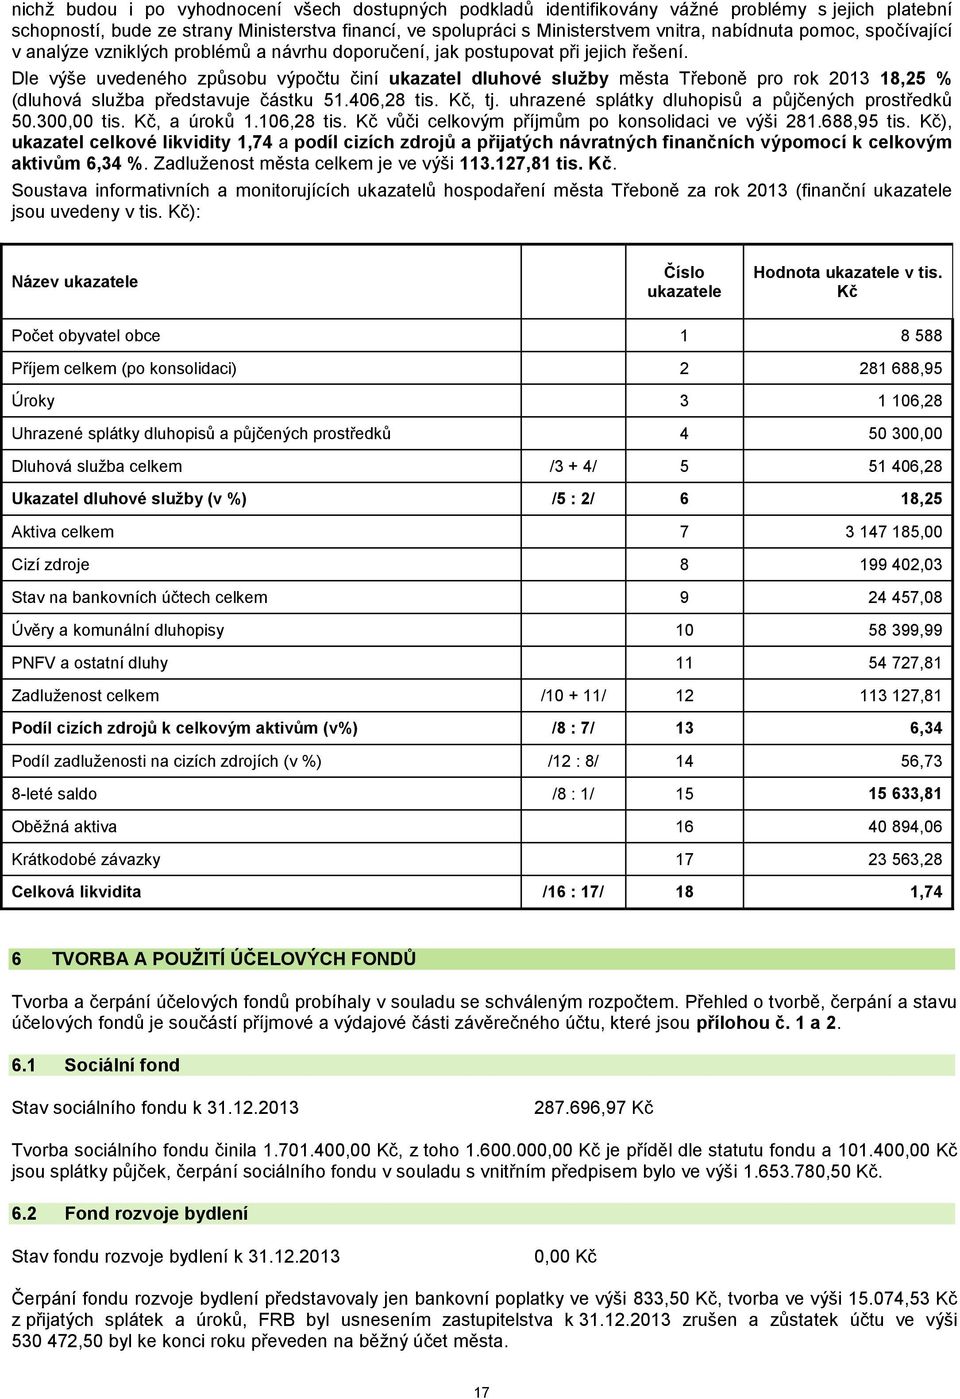 Dle výše uvedeného způsobu výpočtu činí ukazatel dluhové služby města Třeboně pro rok 2013 18,25 % (dluhová služba představuje částku 51.406,28 tis. Kč, tj.